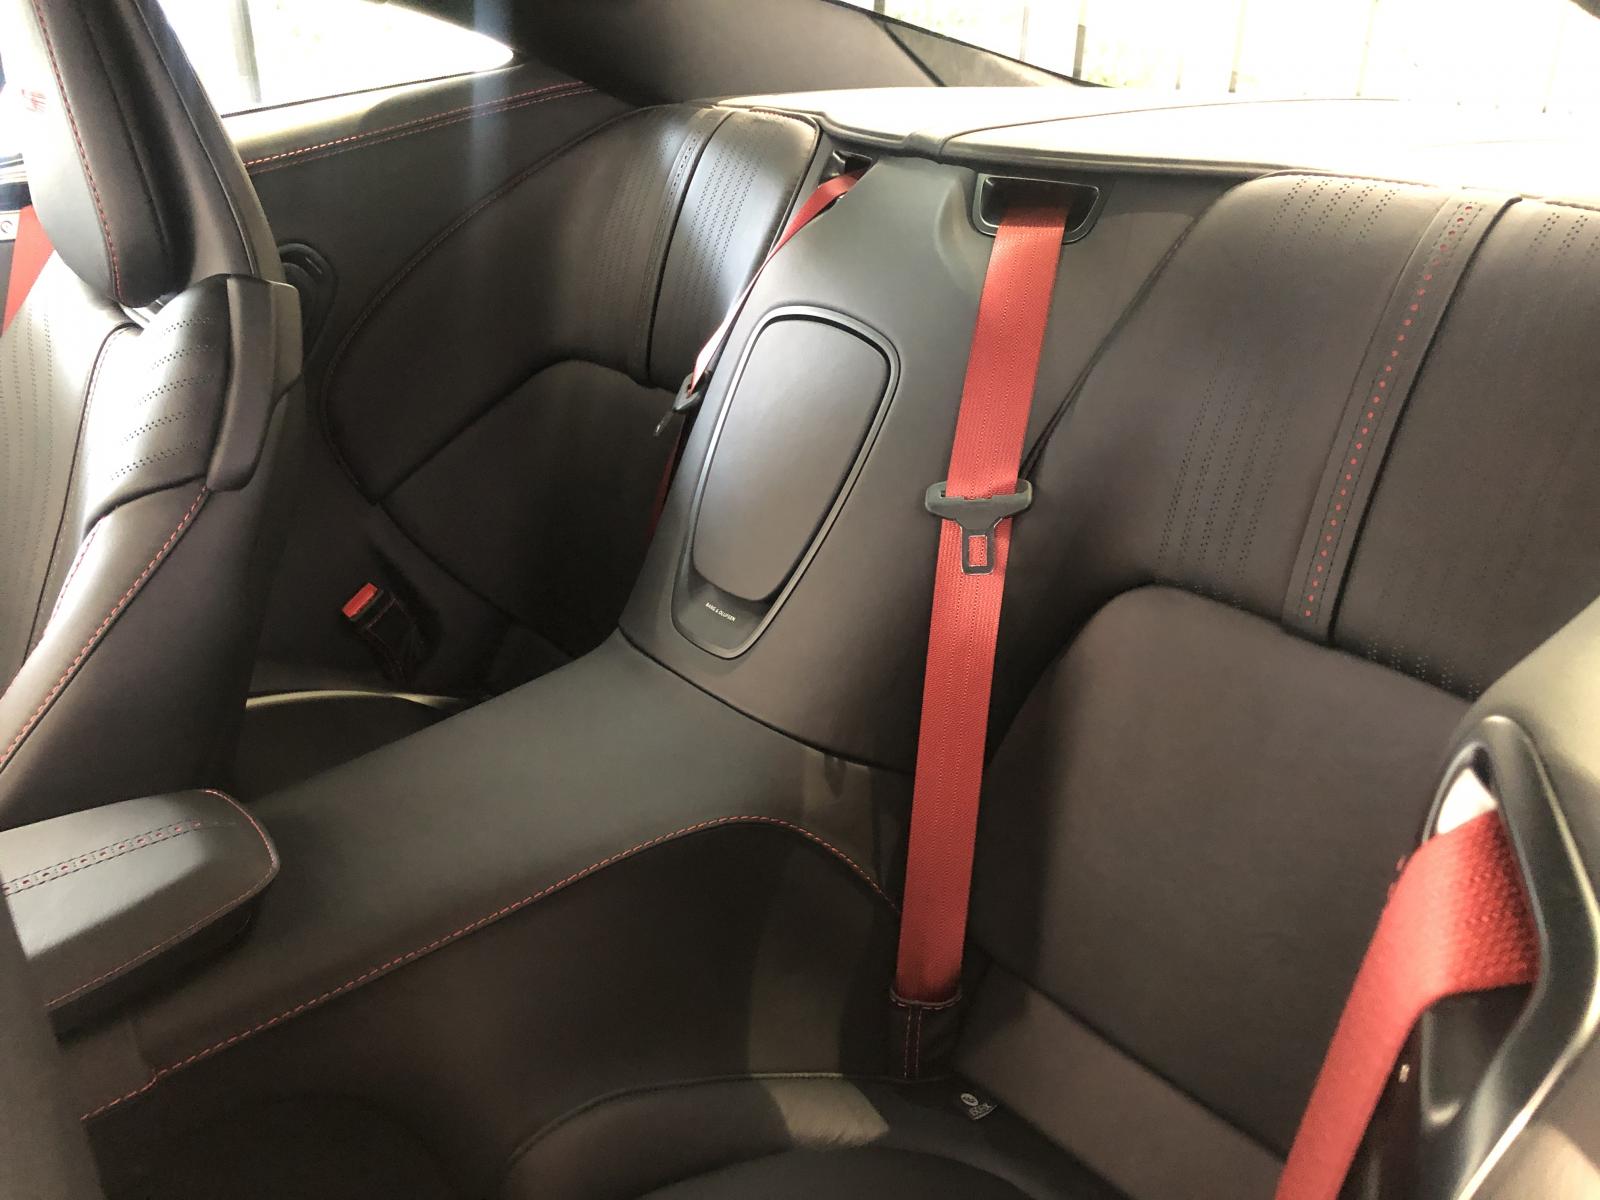 Hàng ghế sau của siêu xe Aston Martin DB11 V8 khá chật chỉ phù hợp trẻ em ngồi hoặc làm khoang chứa đồ